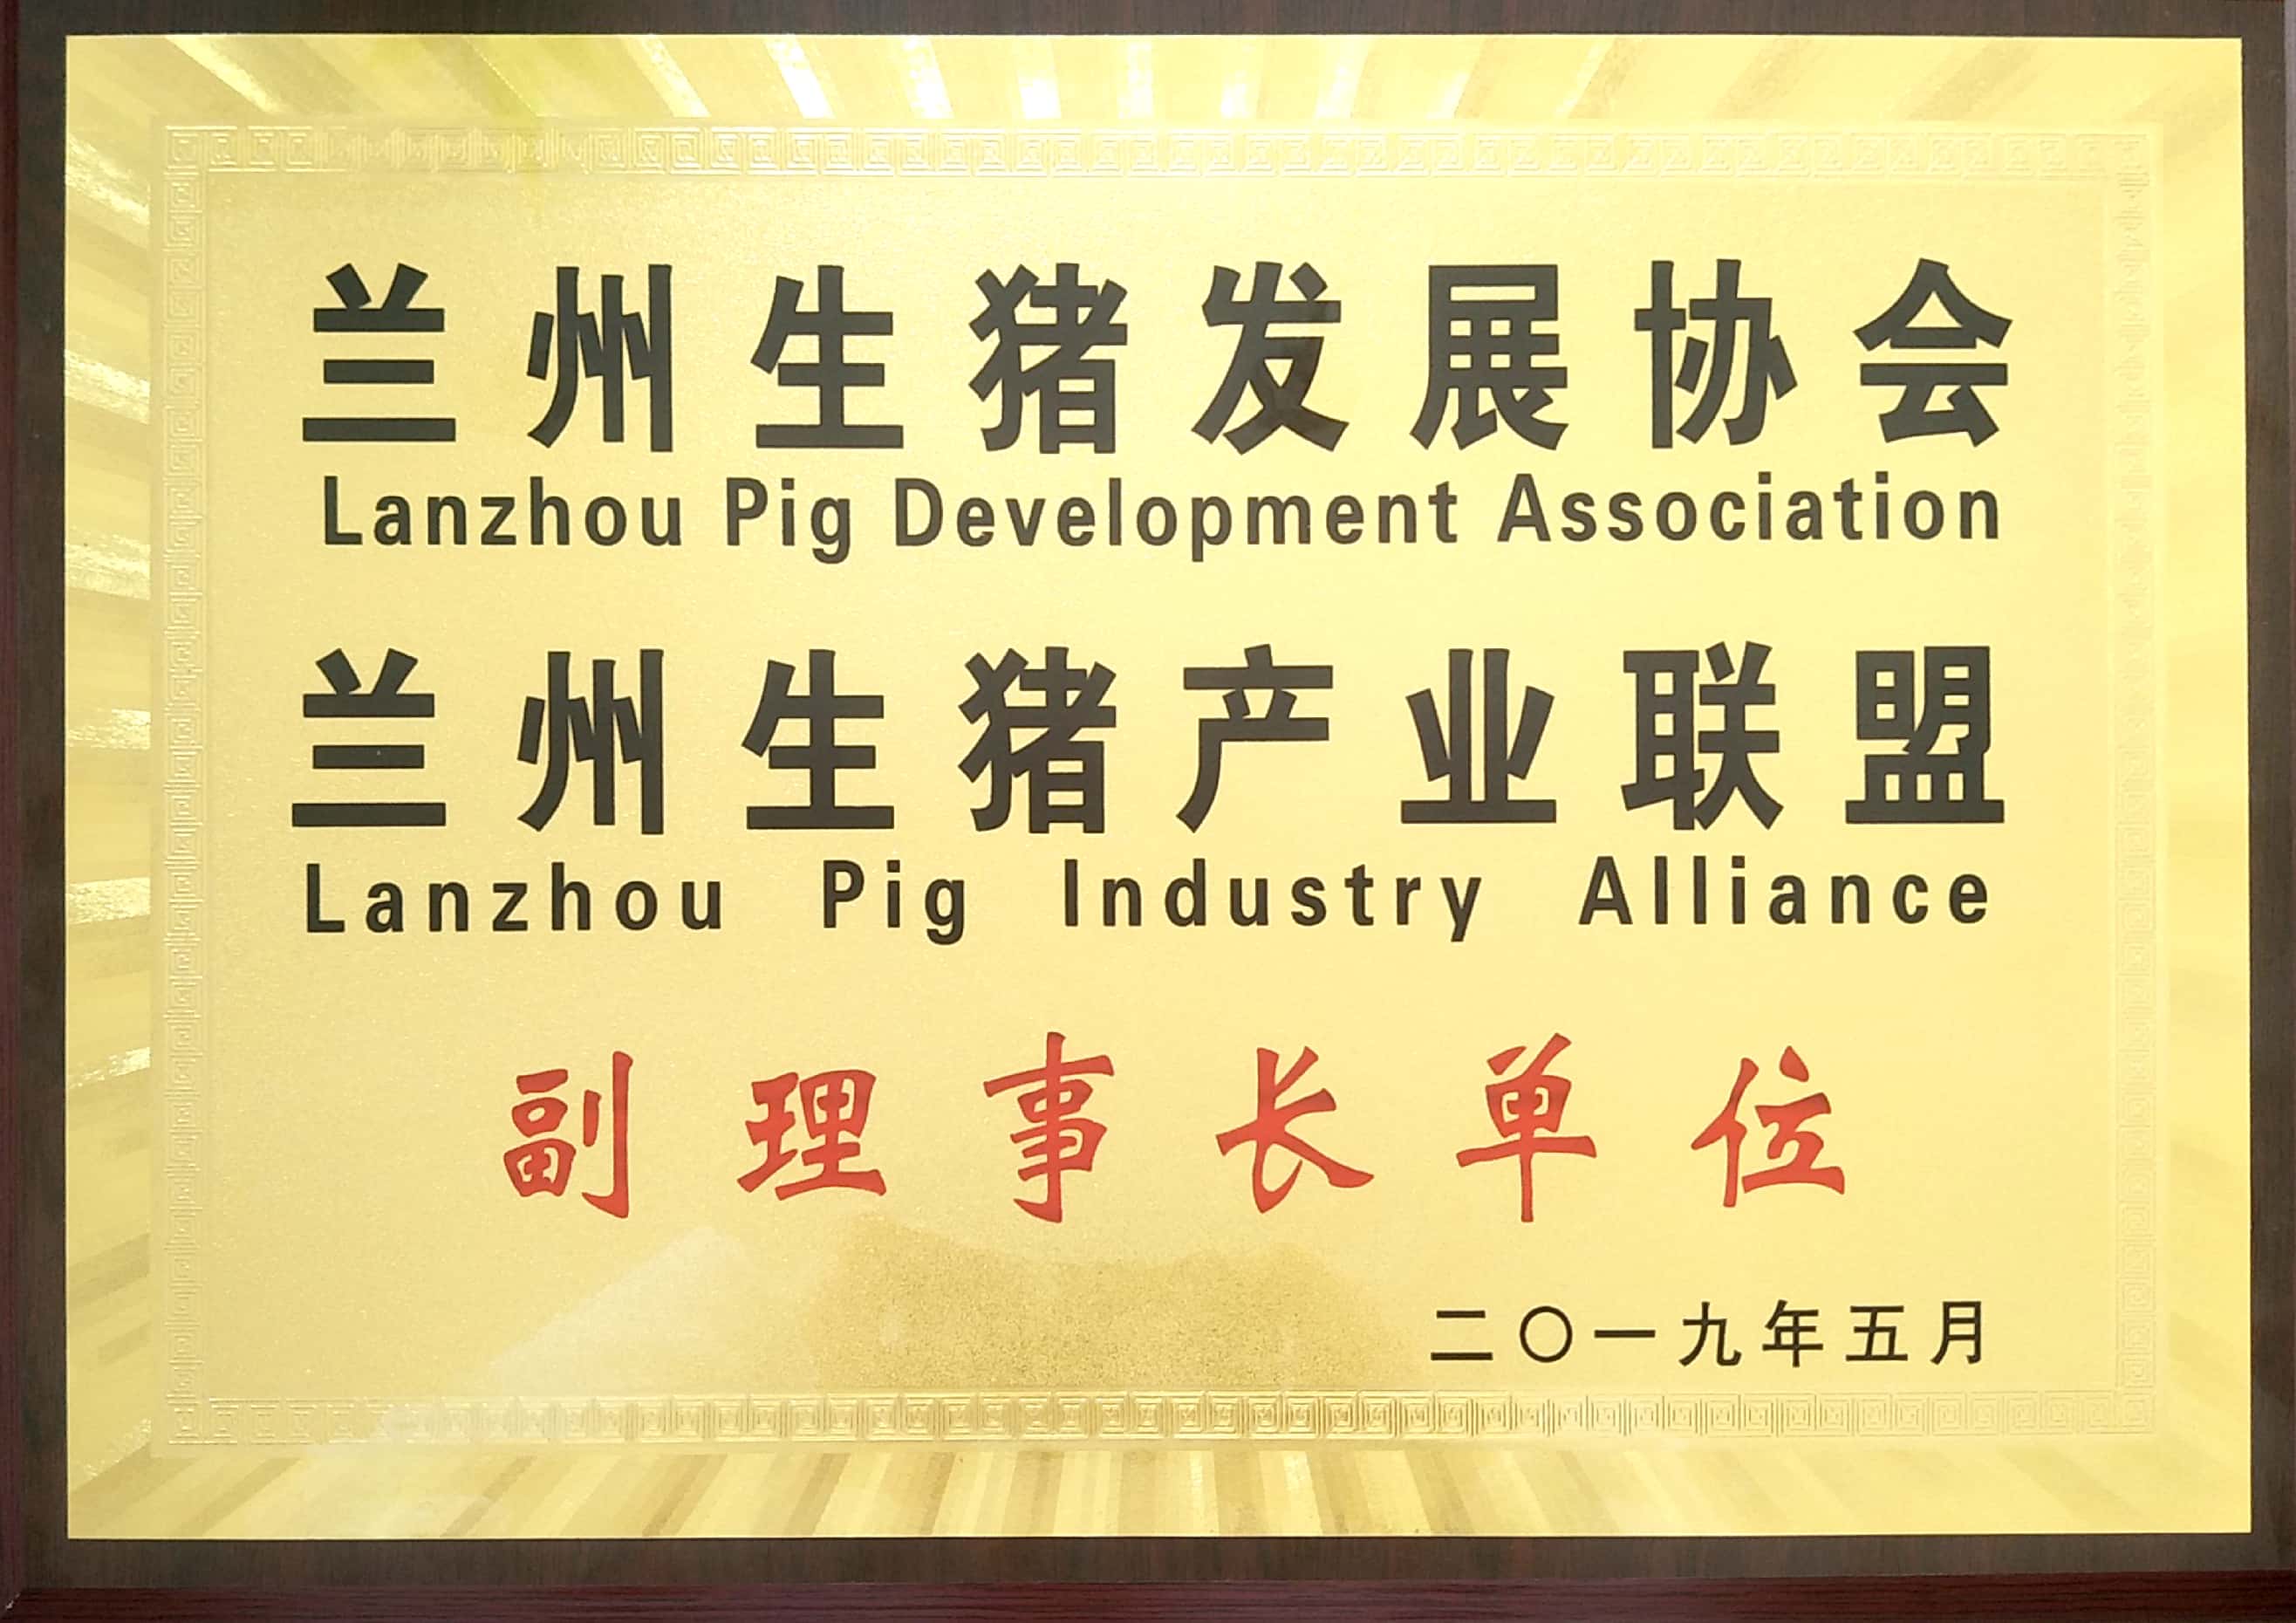 蘭州生豬發展協會、蘭州生豬產業聯盟副理事長單位